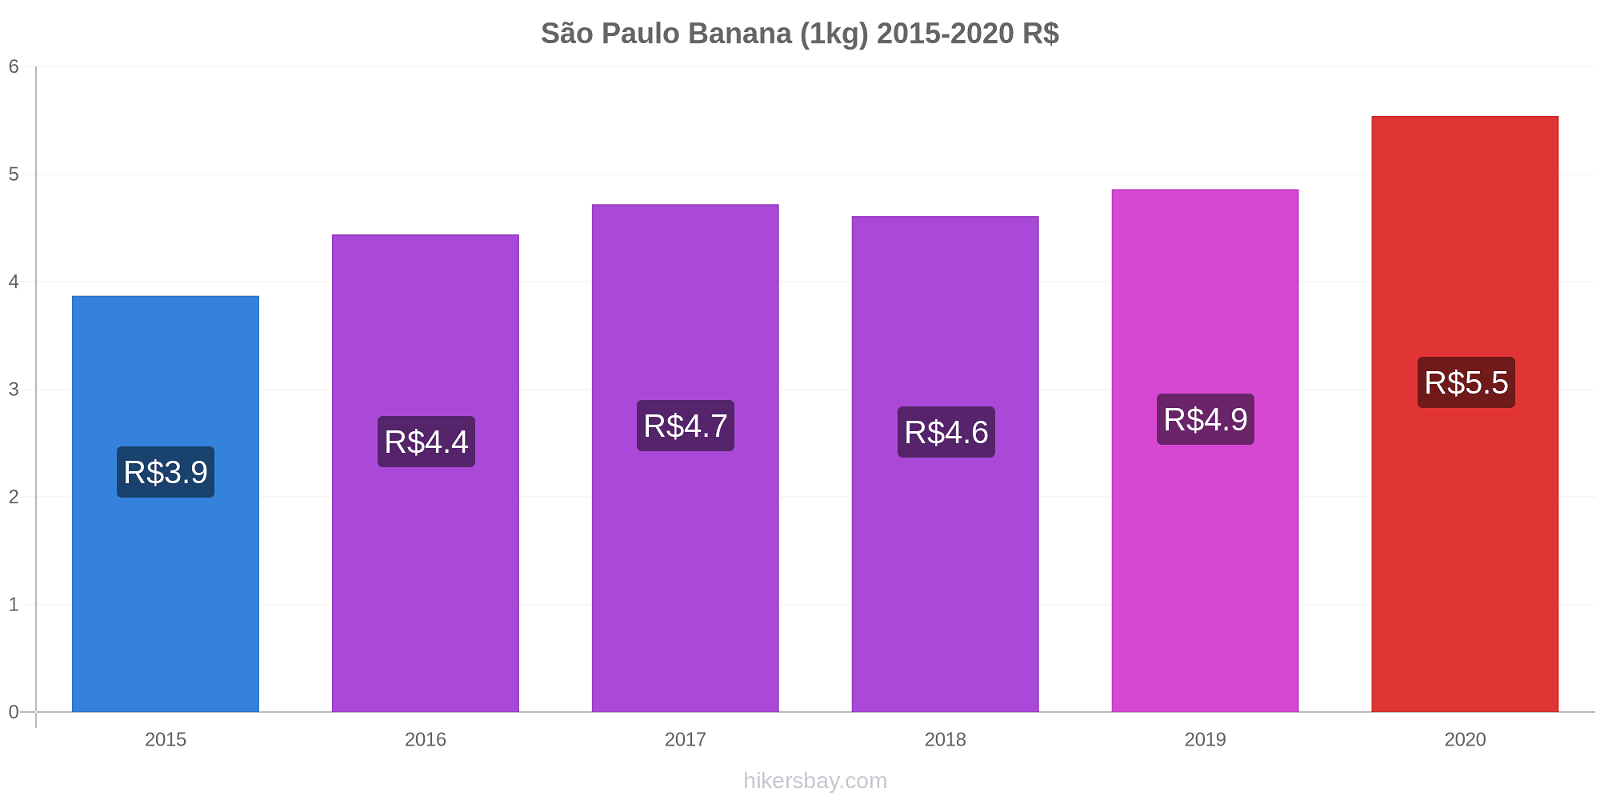 São Paulo modificări de preț Banana (1kg) hikersbay.com